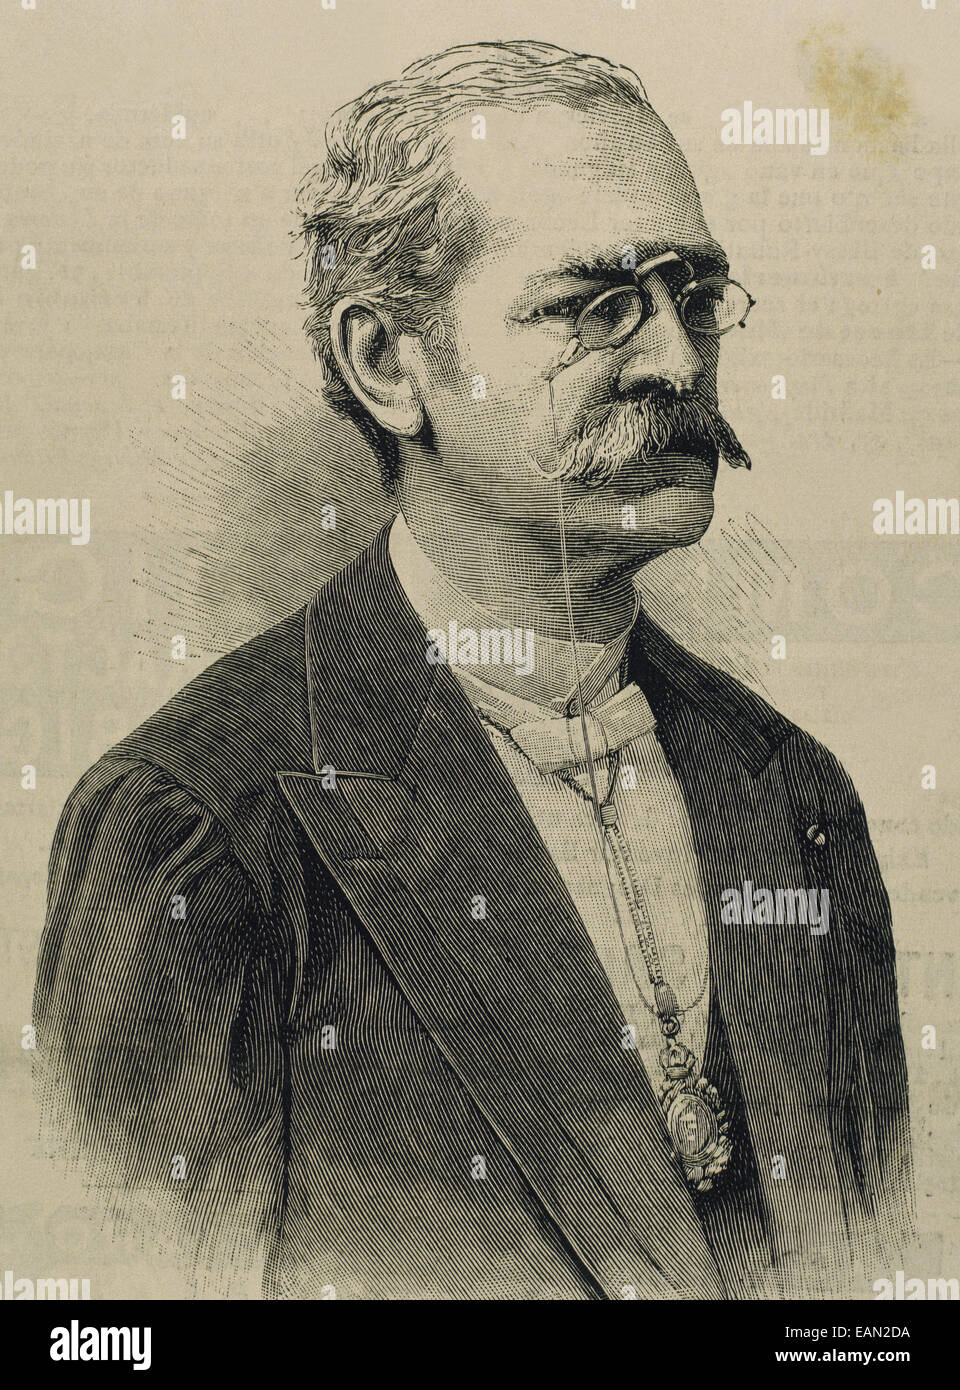 Ricardo Palma (1833-1919). Peruanische Schriftsteller, Gelehrter, Bibliothekar und Politiker. Porträt. Gravur. Stockfoto